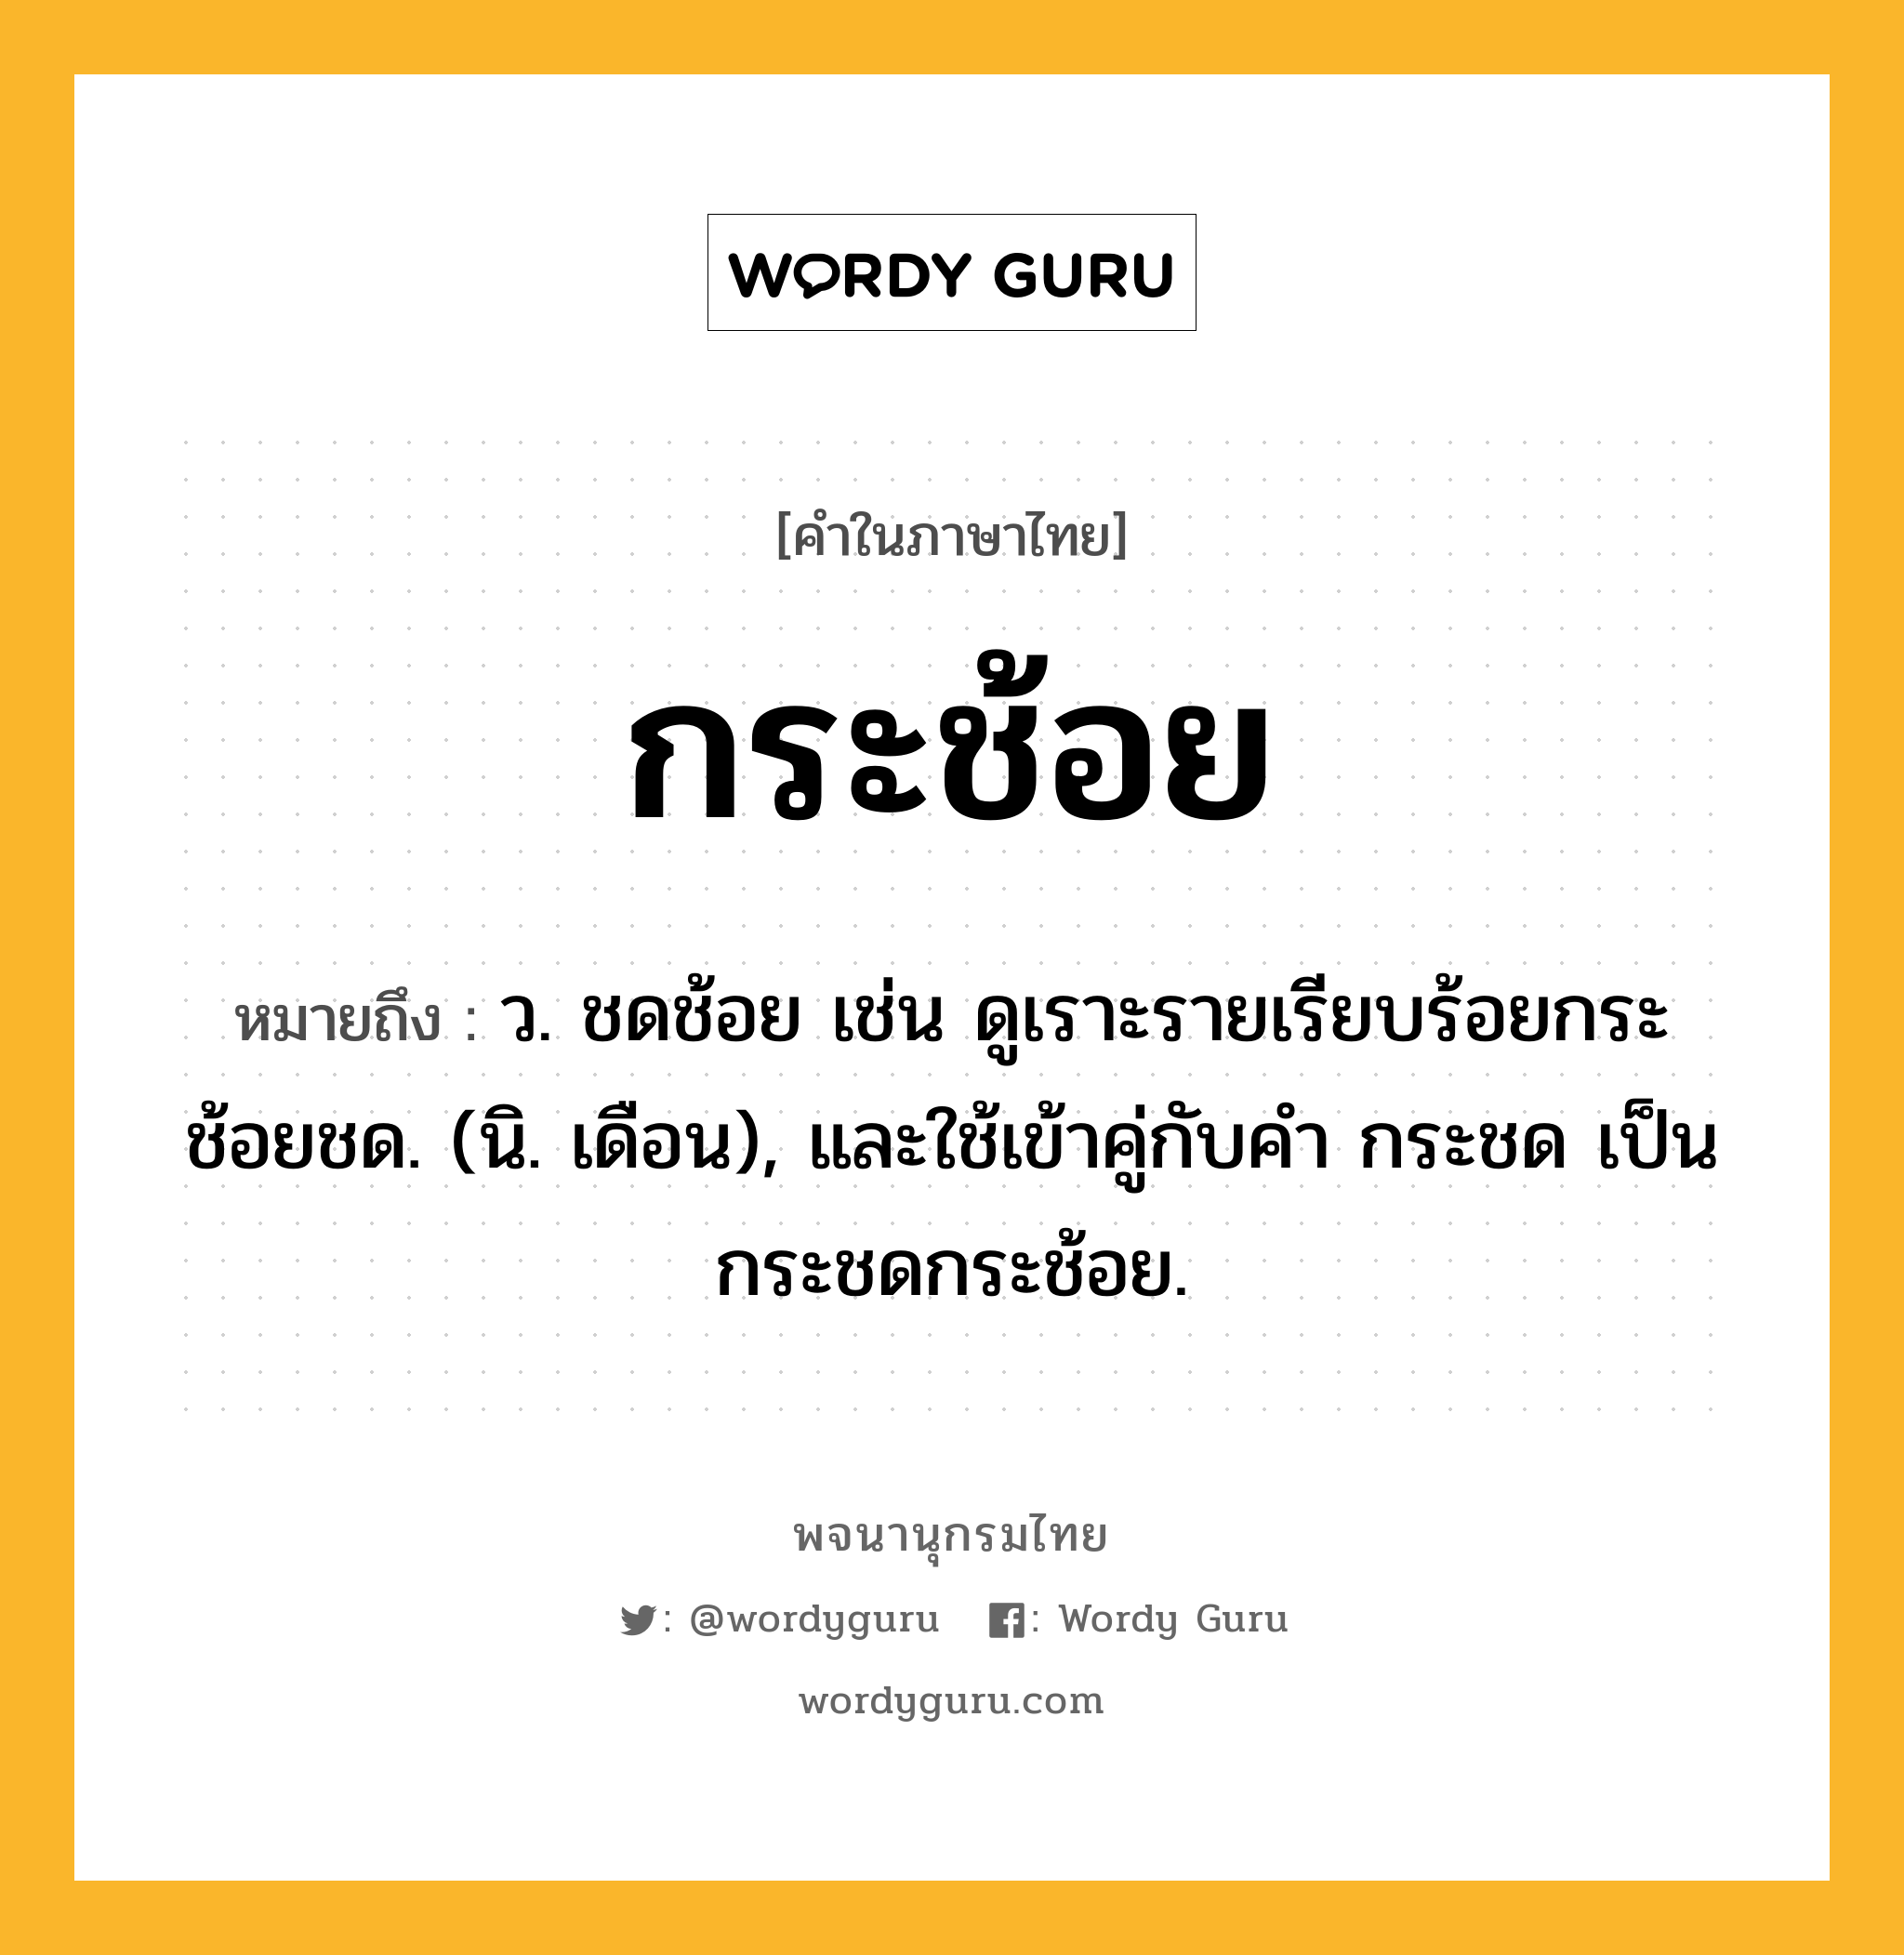 กระช้อย ความหมาย หมายถึงอะไร?, คำในภาษาไทย กระช้อย หมายถึง ว. ชดช้อย เช่น ดูเราะรายเรียบร้อยกระช้อยชด. (นิ. เดือน), และใช้เข้าคู่กับคํา กระชด เป็น กระชดกระช้อย.